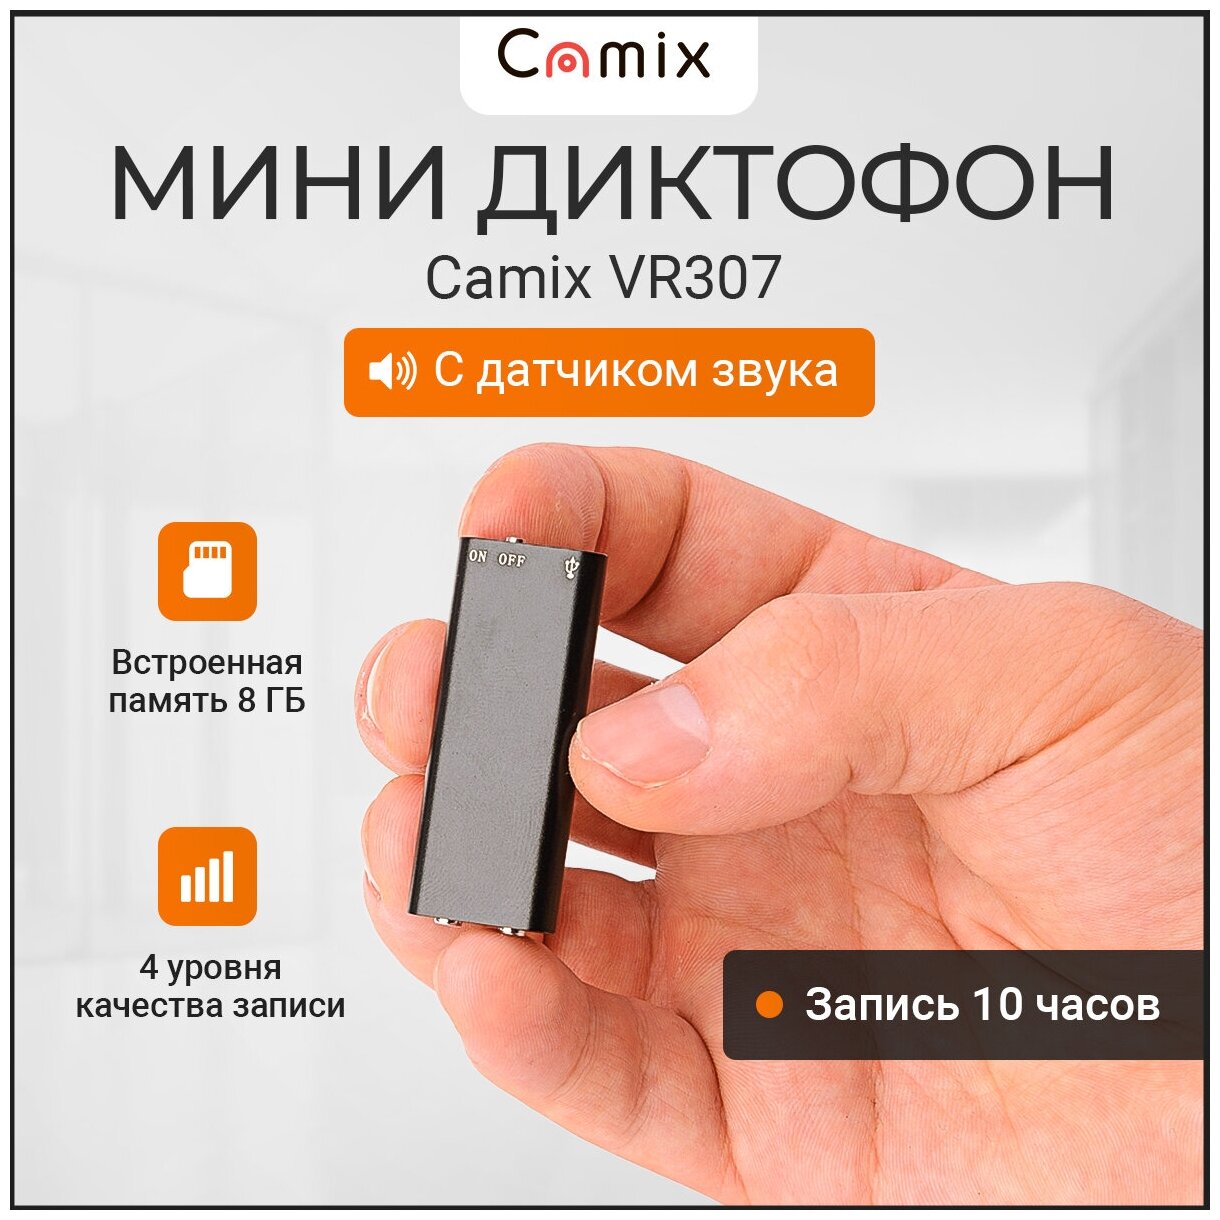 Мини диктофон Camix VR307 8Гб скрытый для записи аудио с датчиком шума, MP3 плеер с наушниками и маленький микрофон типа жучок прослушка